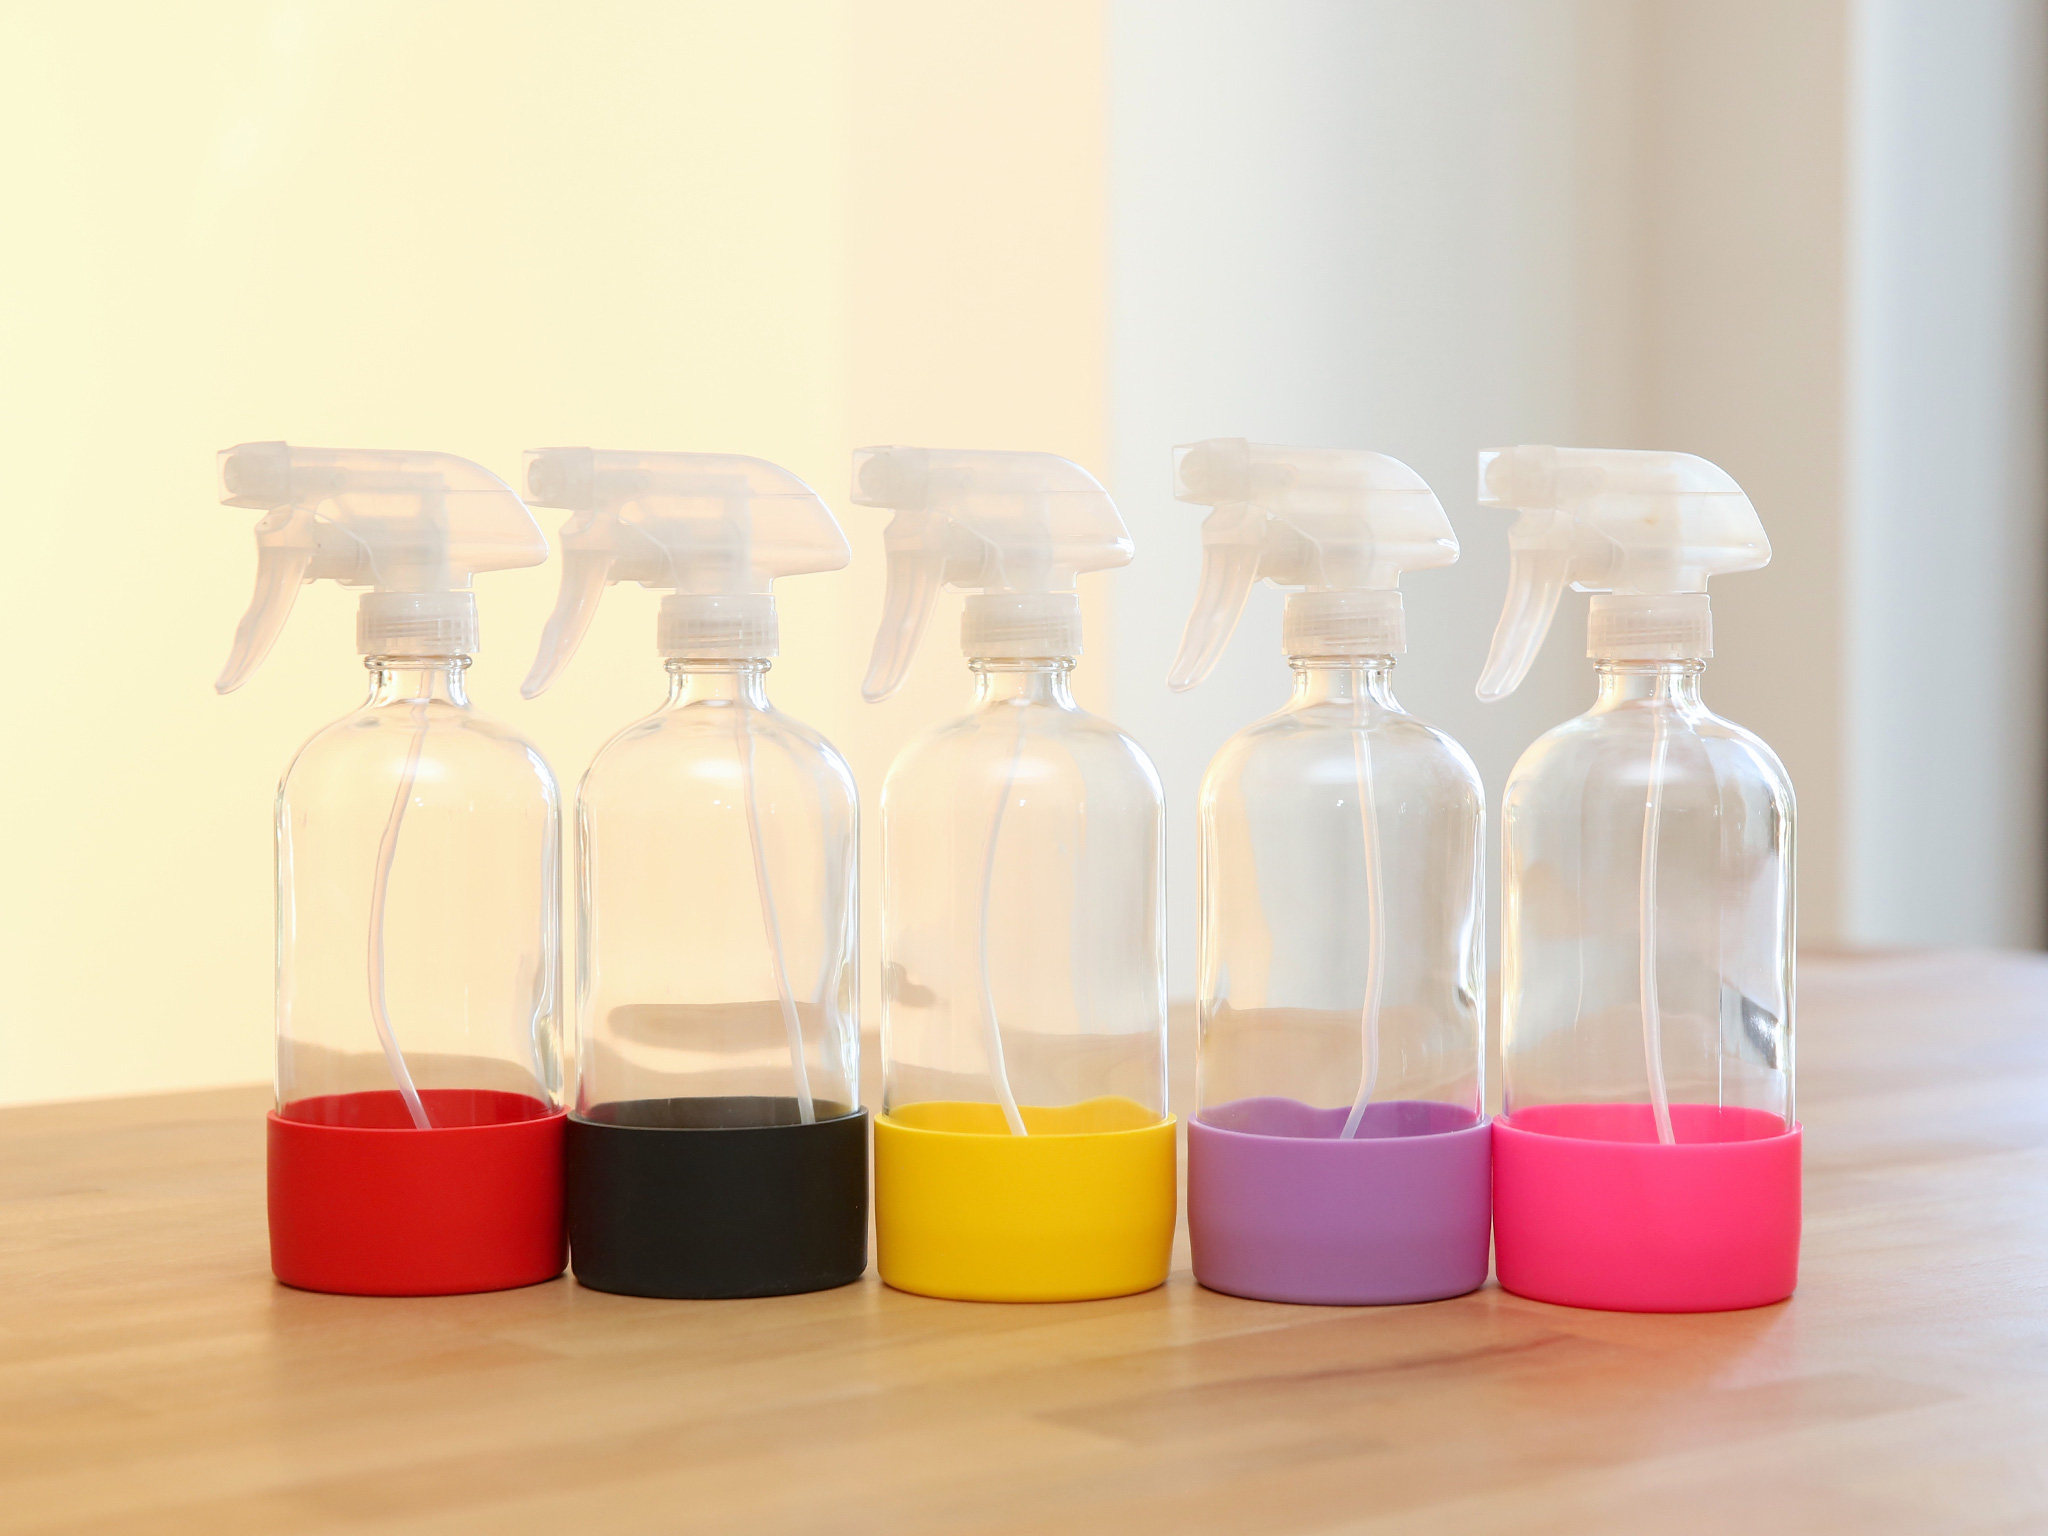 Die Sprayflasche 'Smile' aus durchsichtigem Glas mit einer passenden Silikon-Hülle in deiner Lieblingsfarbe ist ein Hingucker.